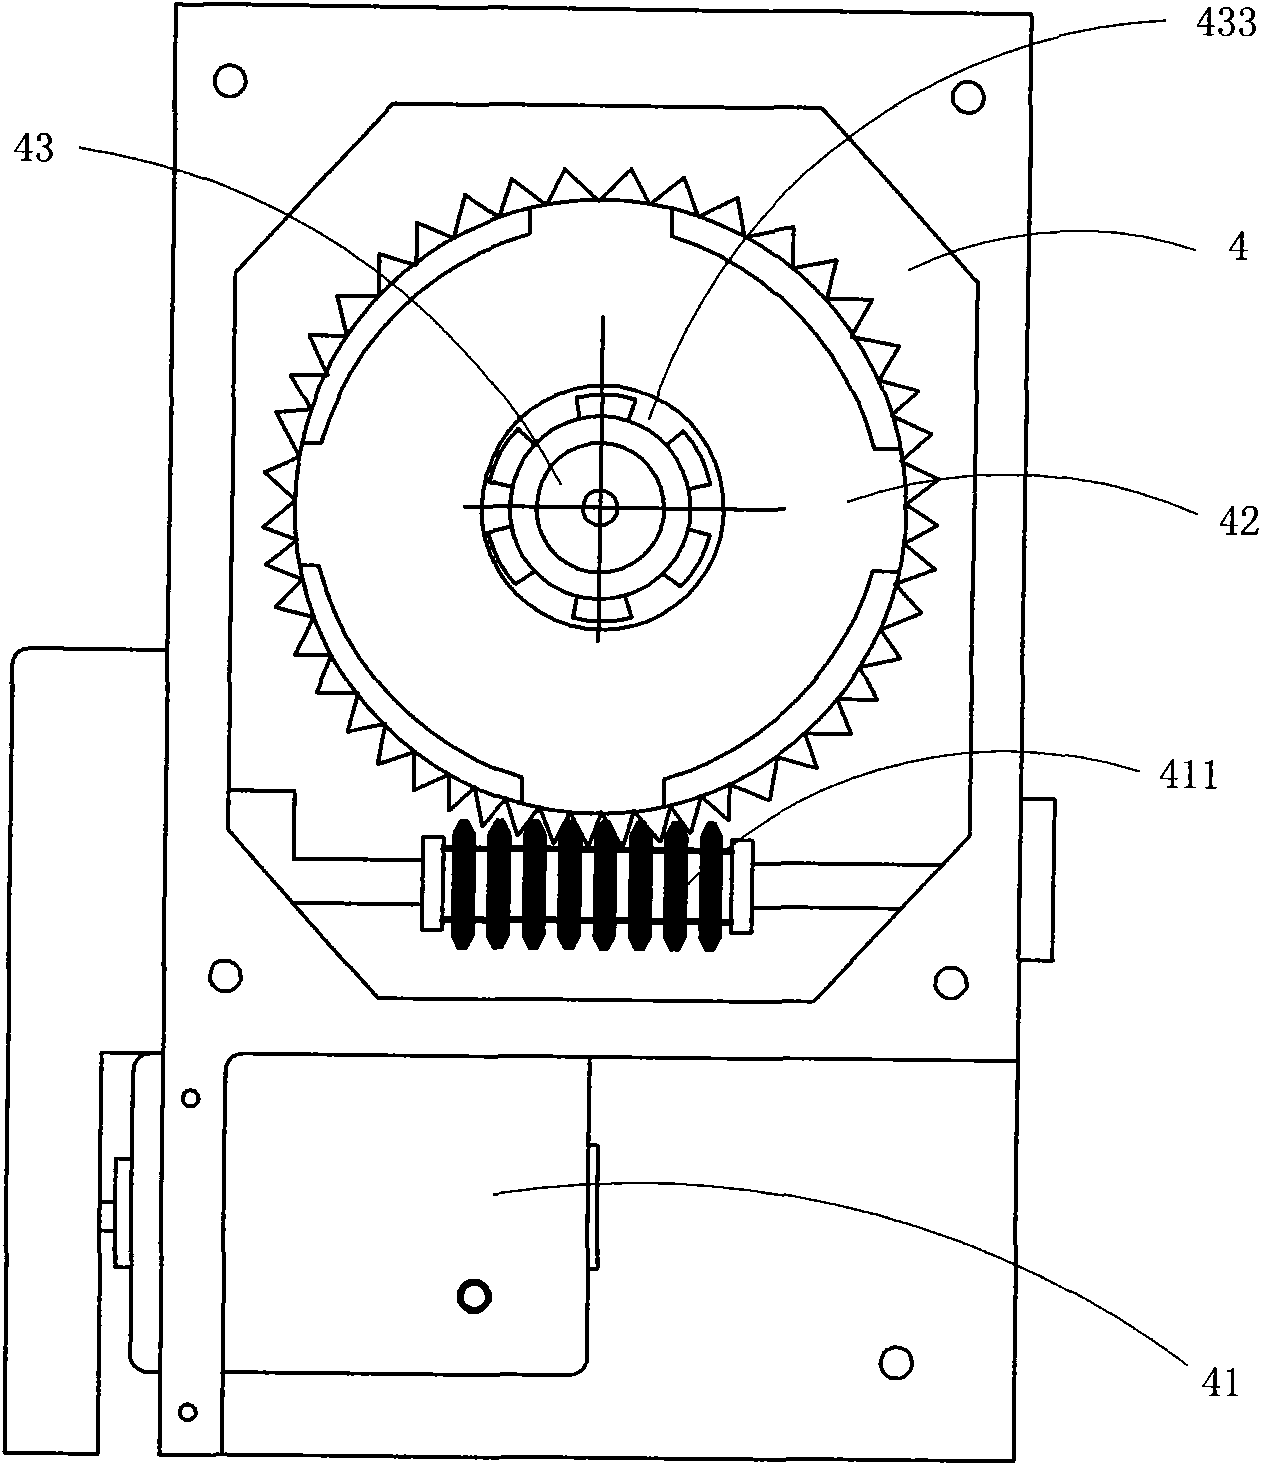 Manual and electrical integral operating mechanism of 10KV vacuum circuit breaker